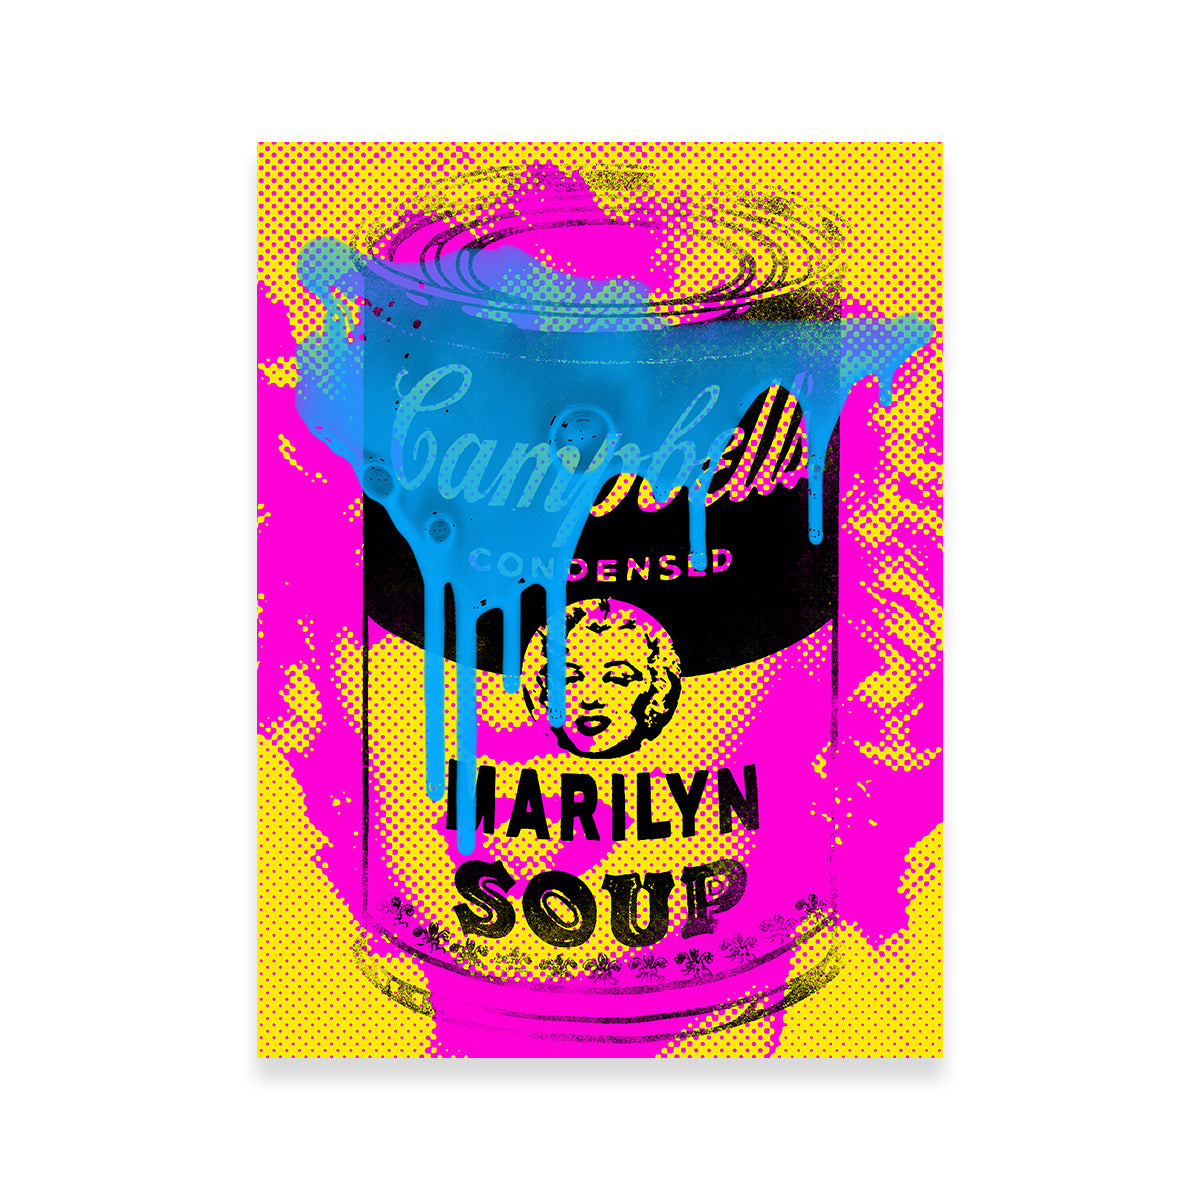 Marilyn Soup